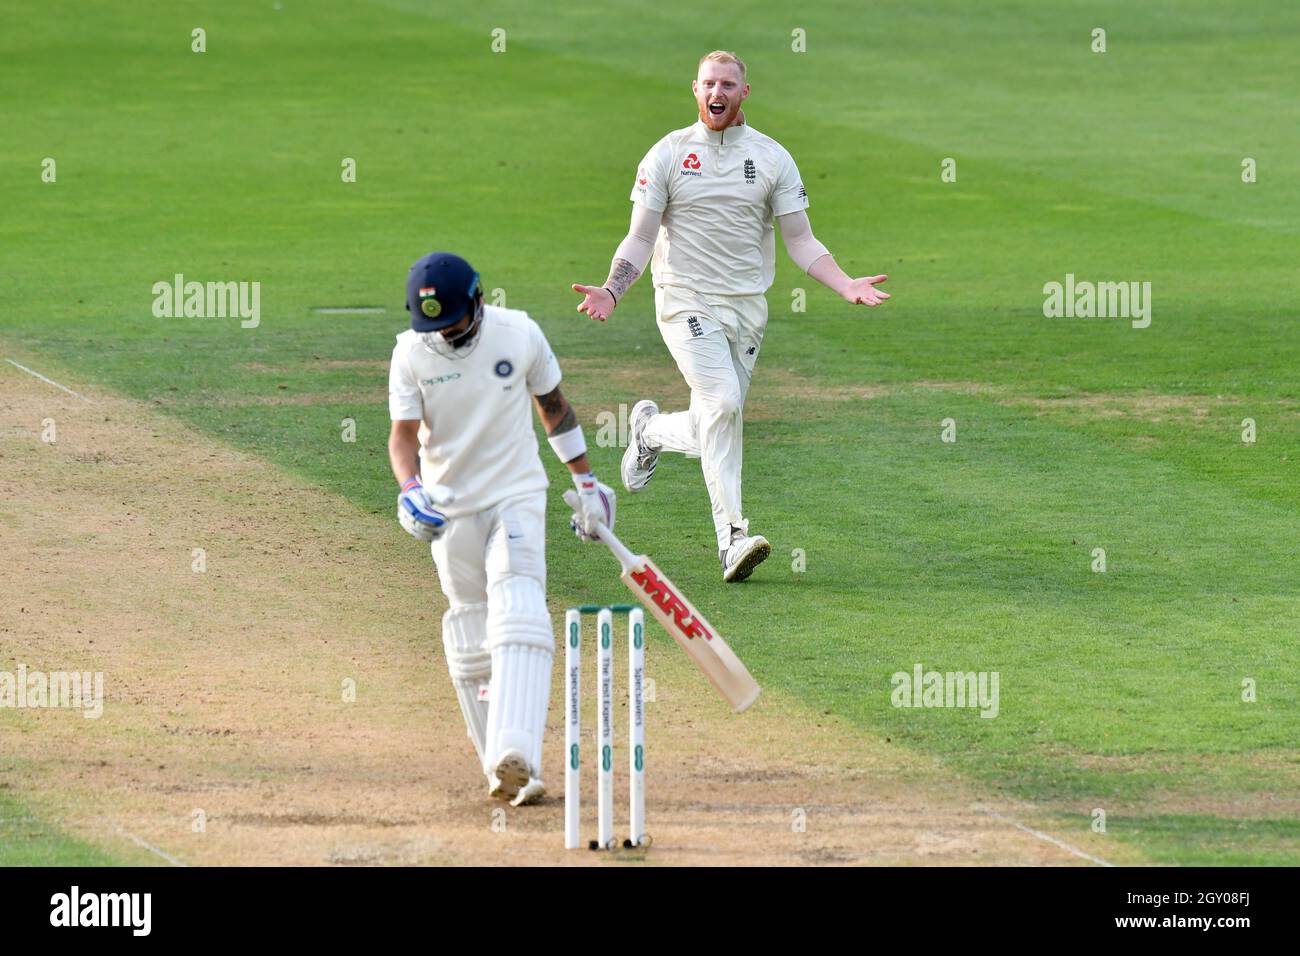 England’s Ben Stokes celebrates taking the wicket of India’s captain Virat Kohli during the test match at The Kia Oval, London. Stock Photo